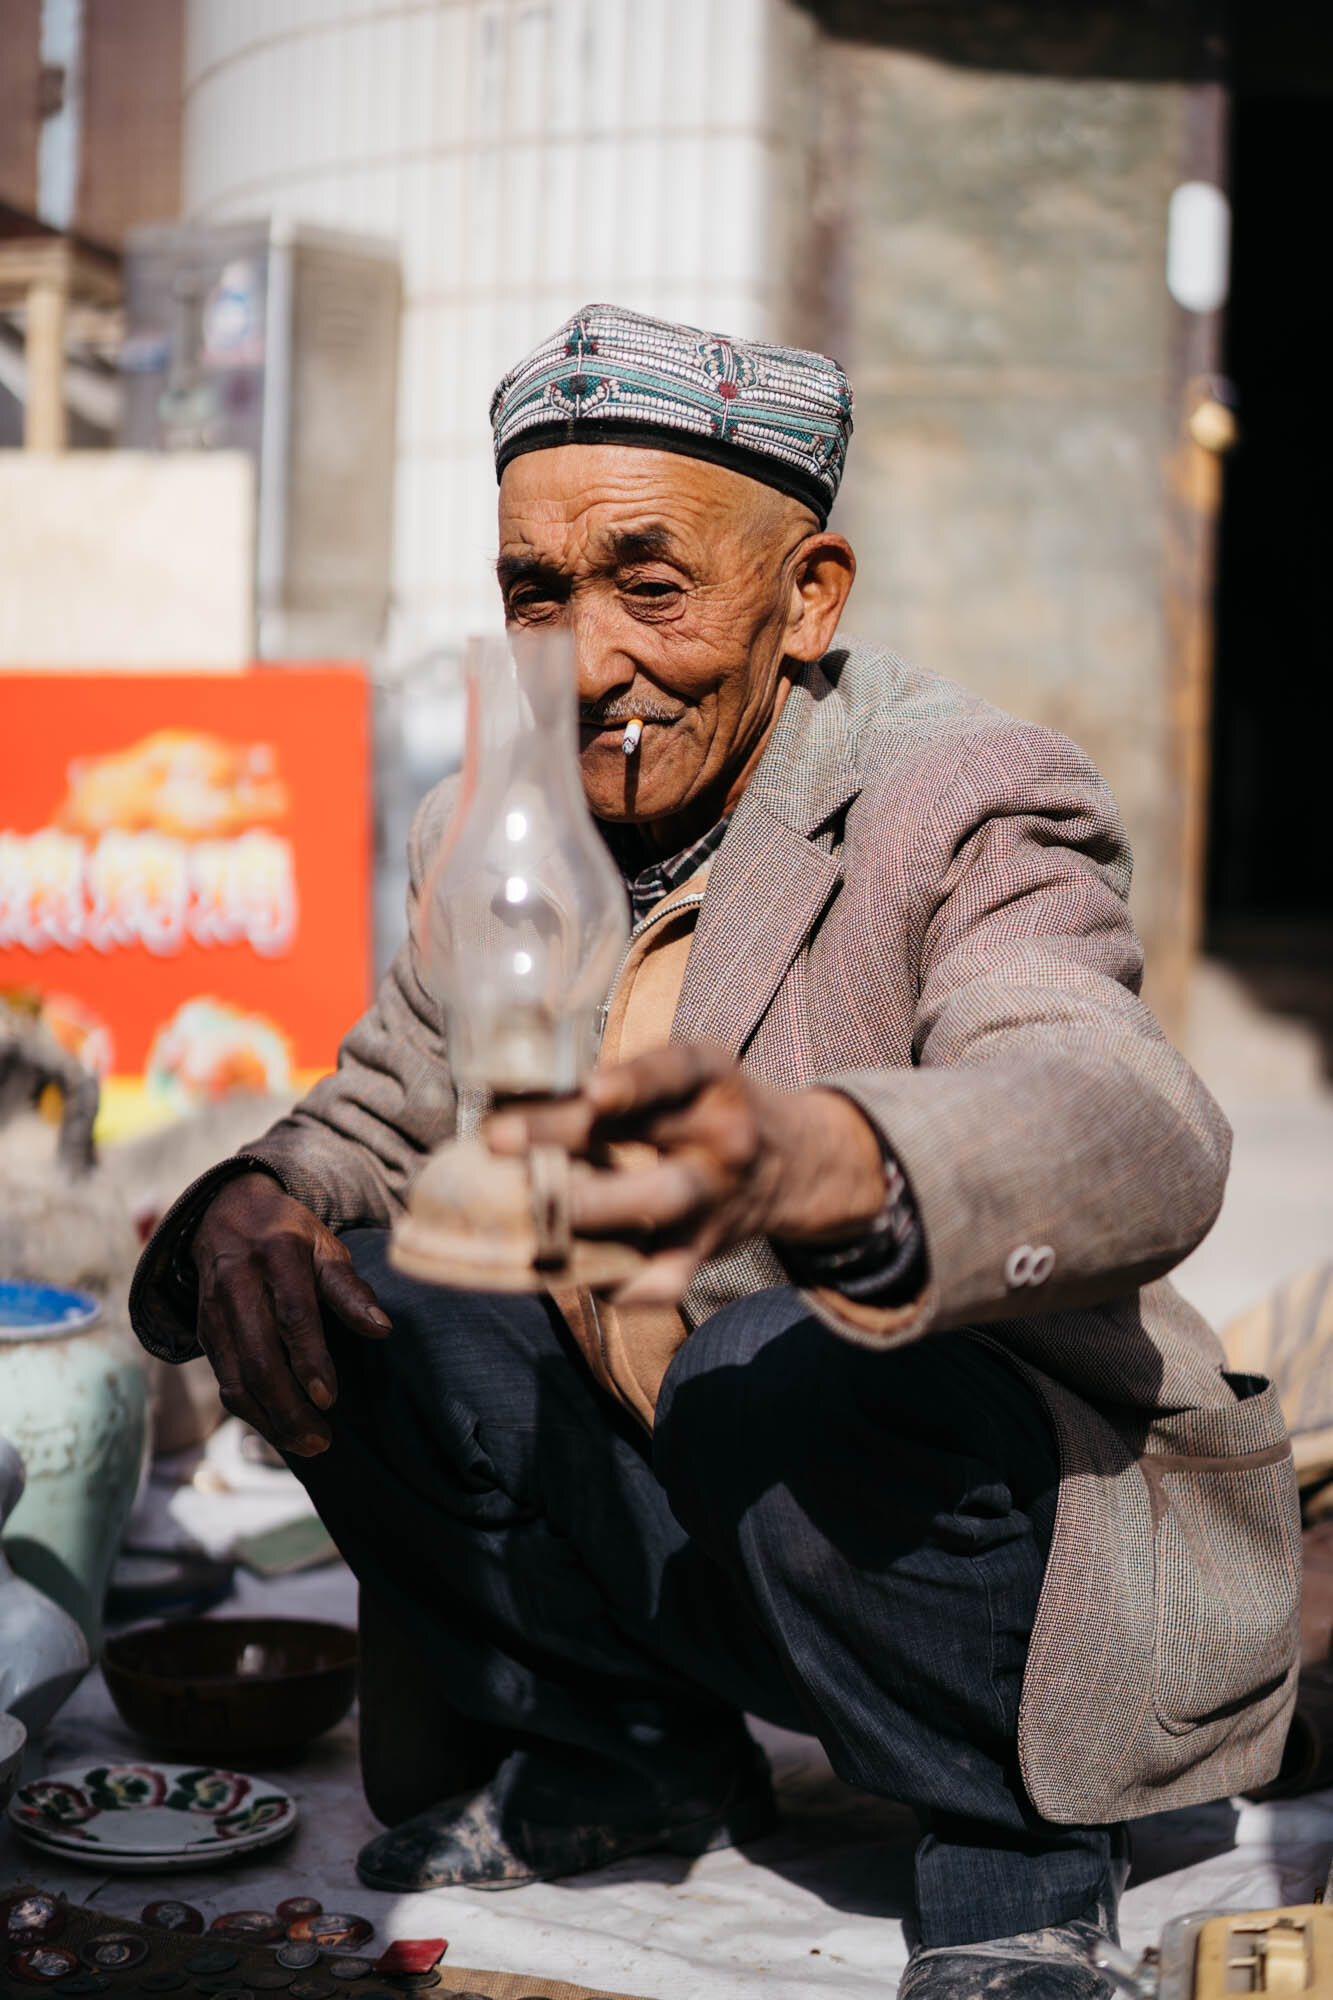  A Uyghur man selling wares at the bazaar 